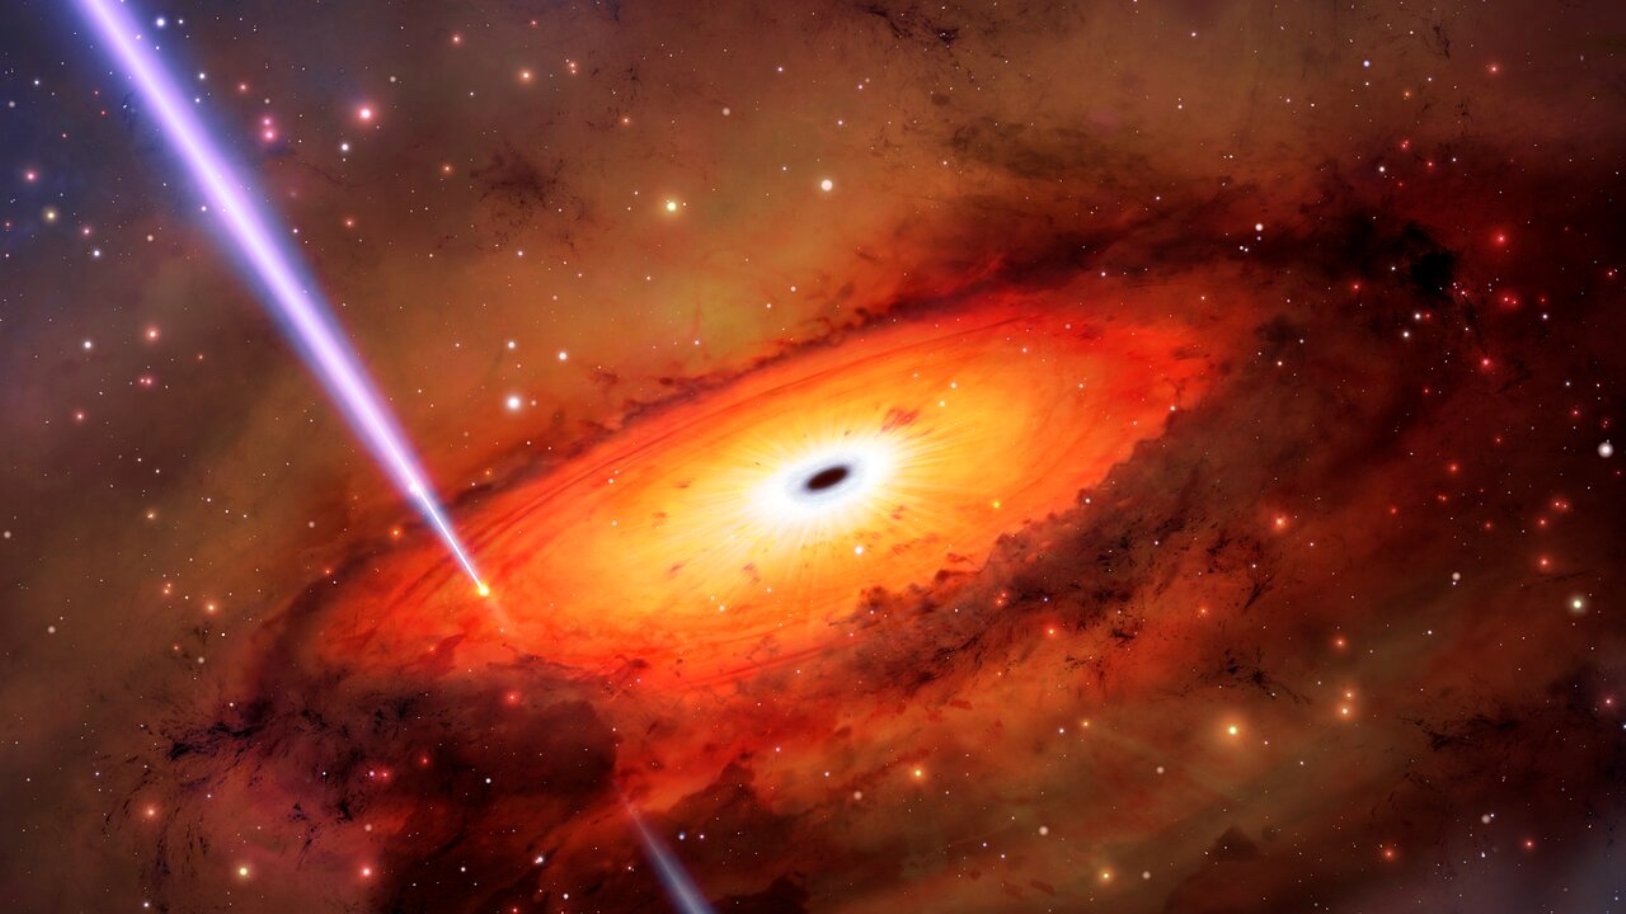 Les astronomes qui étudient un puissant sursaut gamma (GRB) avec l'Observatoire international Gemini, exploité par le NOIRLab de la NSF, ont peut-être observé une manière inédite de détruire une étoile. Contrairement à la plupart des GRB, qui sont causés par l'explosion d'étoiles massives ou la fusion fortuite d'étoiles à neutrons, les astronomes ont conclu que ce GRB provenait plutôt de la collision d'étoiles ou de restes stellaires dans l'environnement saturé entourant un trou noir supermassif au cœur de une ancienne galaxie. © Observatoire international Gemini/NOIRLab/NSF/AURA/M. Ail/M. Zamani